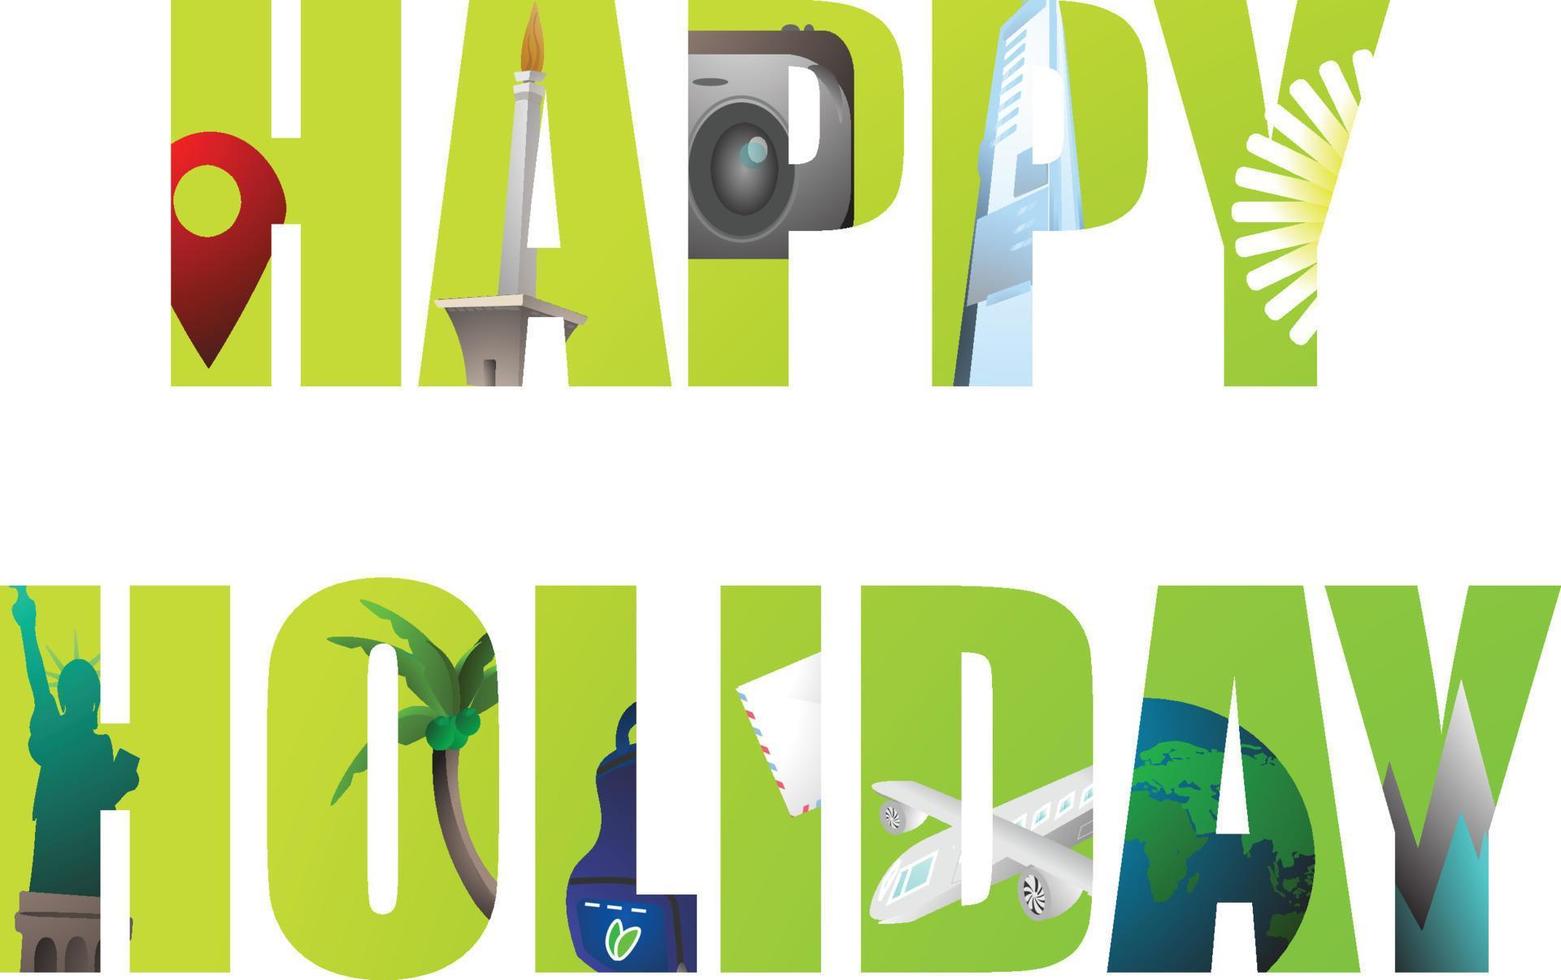 carta de palavra de feliz feriado com cor amarela e verde, férias, turismo, viagens, vetor